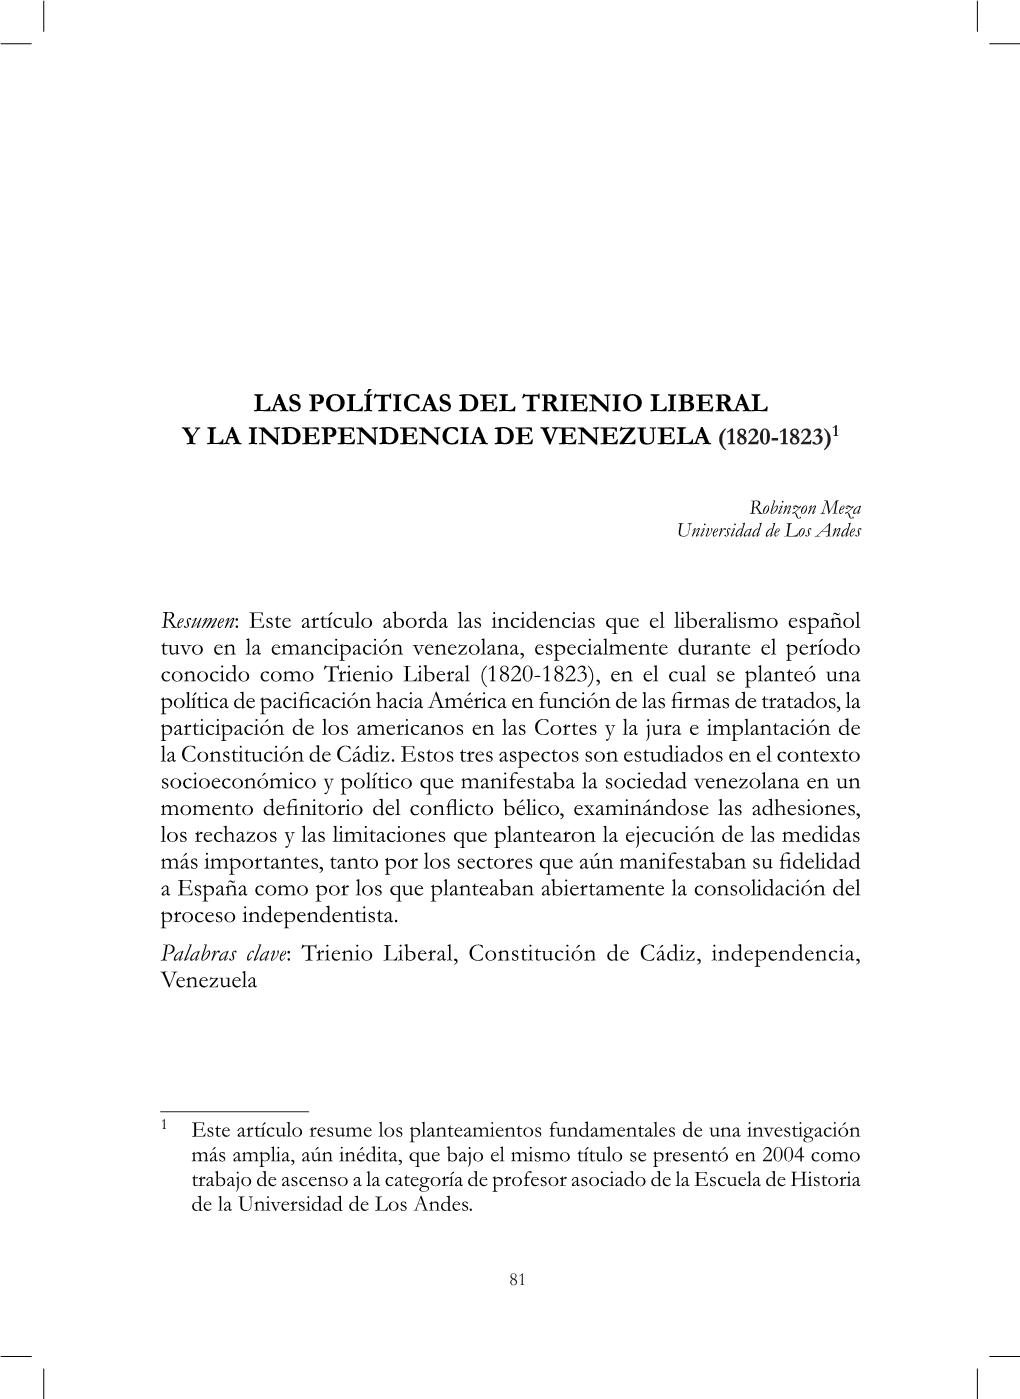 Las Políticas Del Trienio Liberal Y La Independencia De Venezuela (1820-1823)